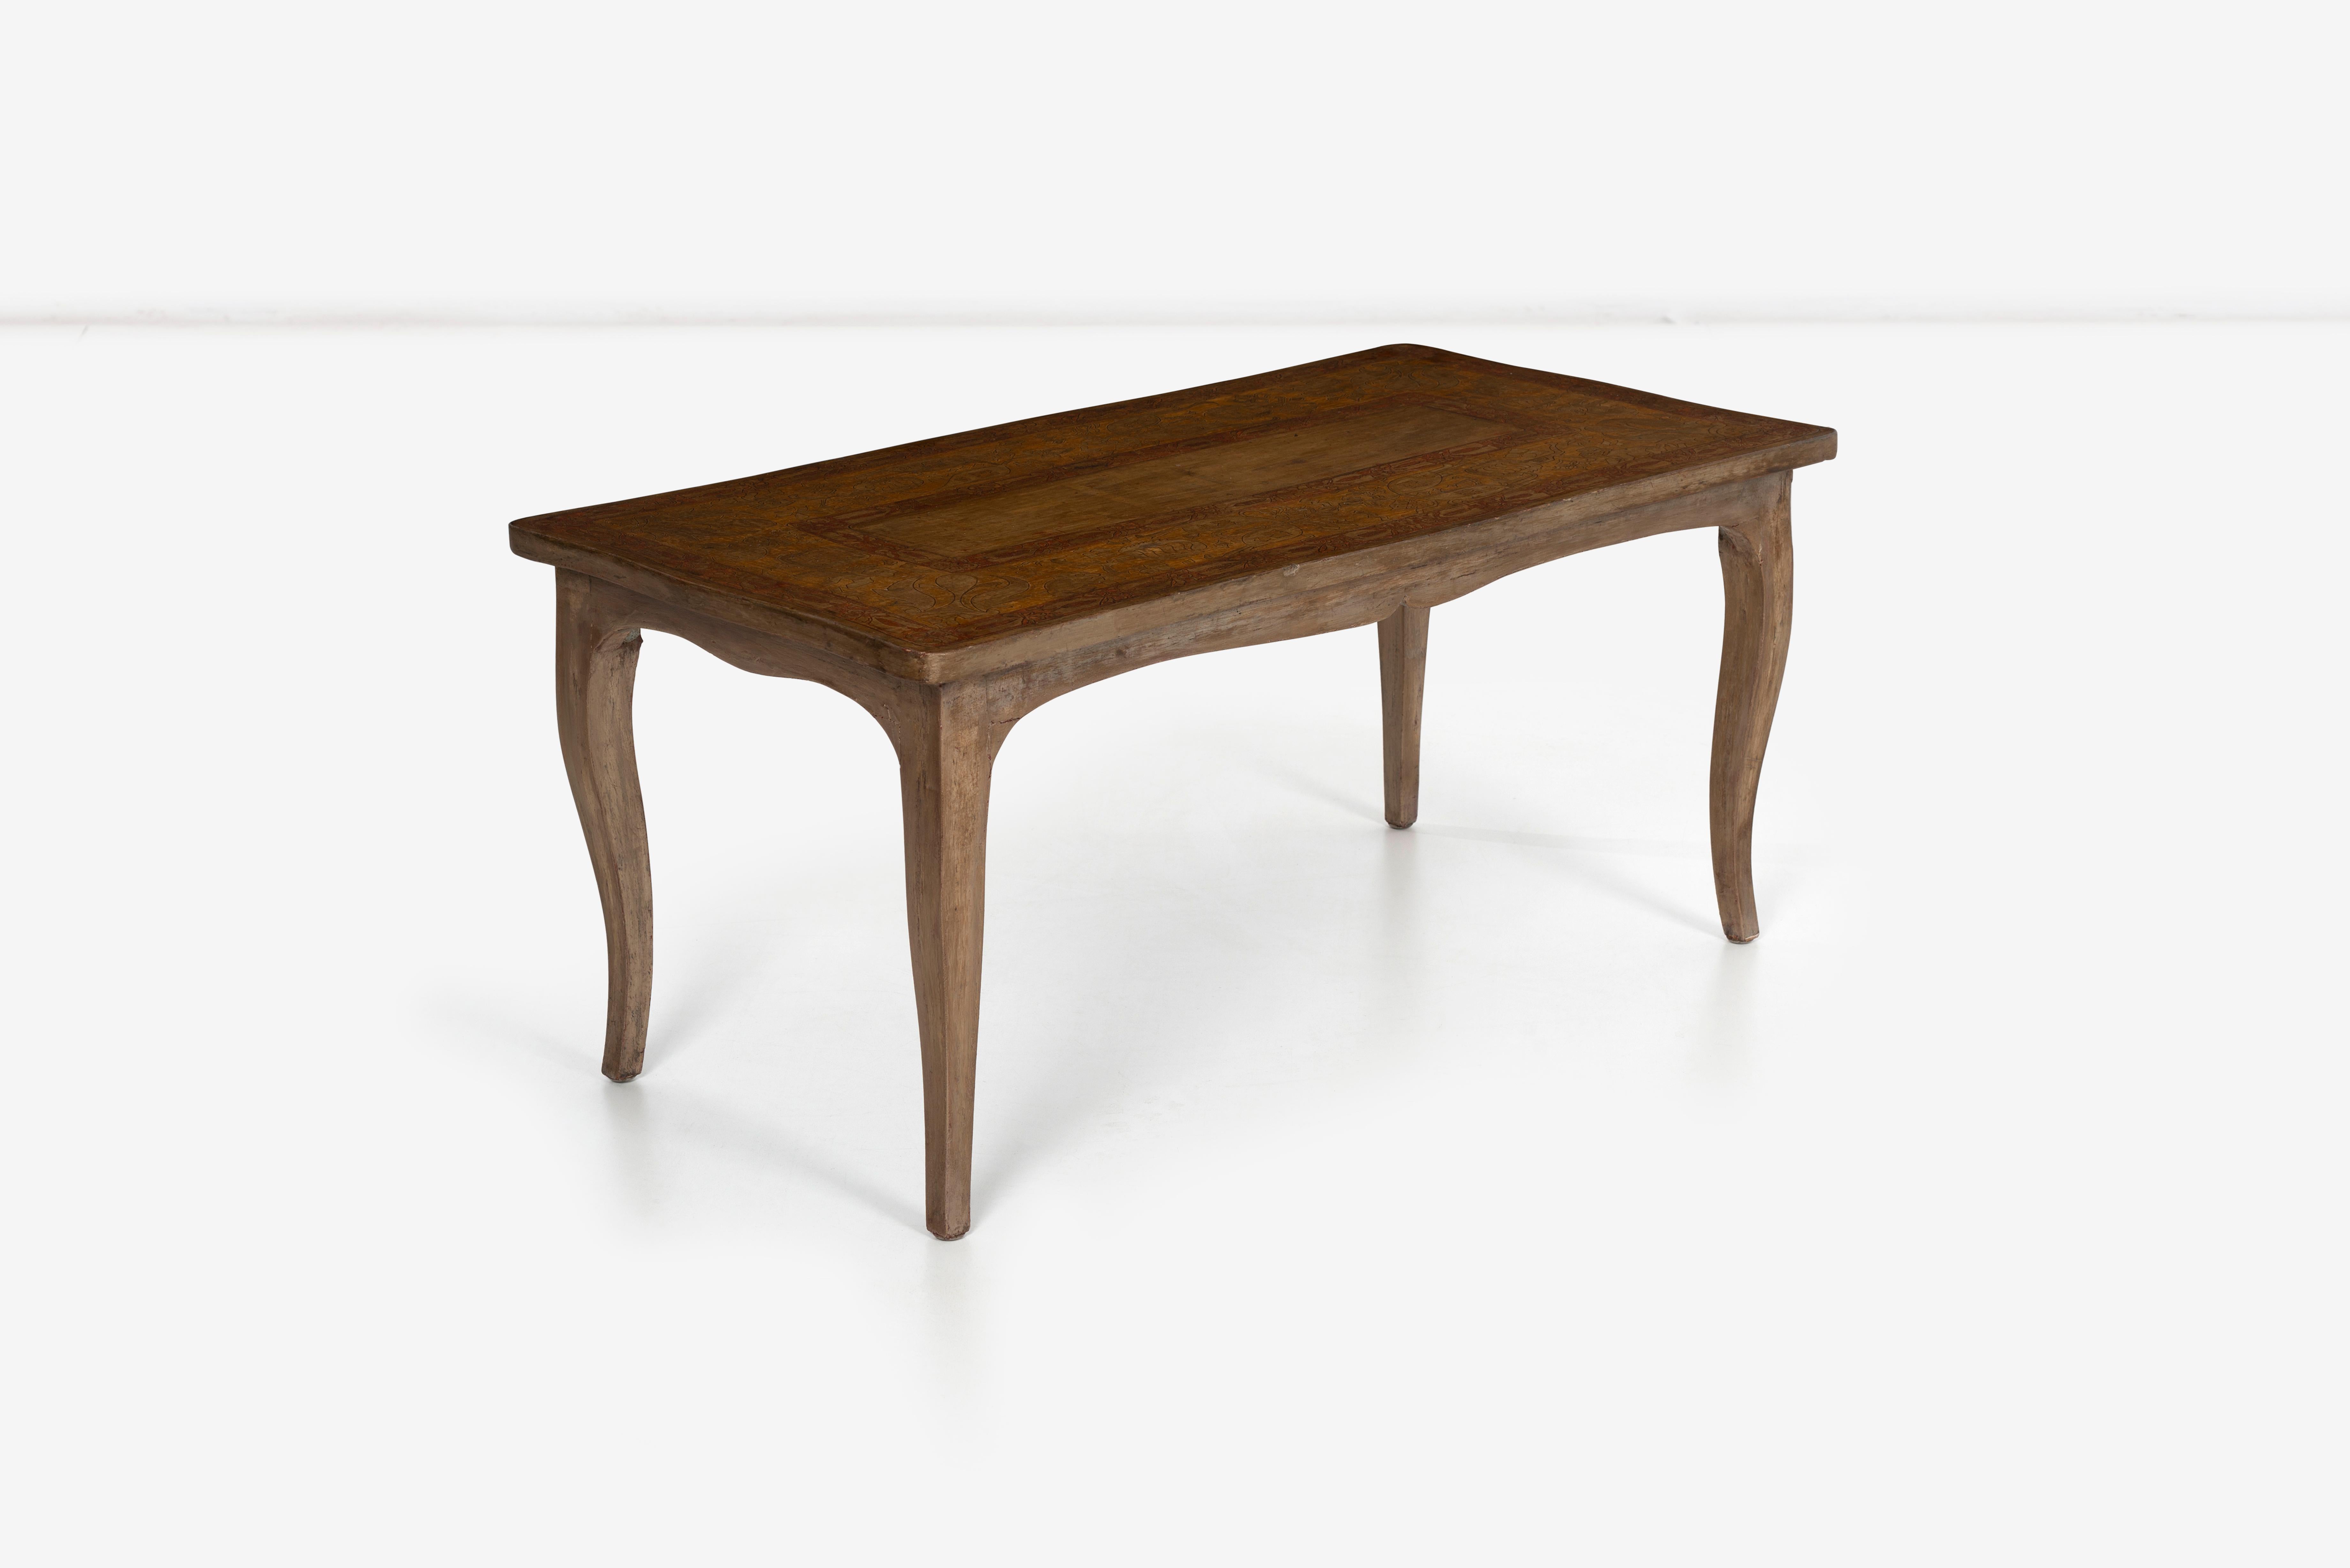 Max Kuehne benutzerdefinierte Couchtisch, diese einzigartige Tabelle eine private Kommission mit handgeschnitztem Holz ist dann gemalt und Silber Blatt über dekorative Motive.
Kuehne hatte eine erfolgreiche Karriere als Holzschnitzer, der